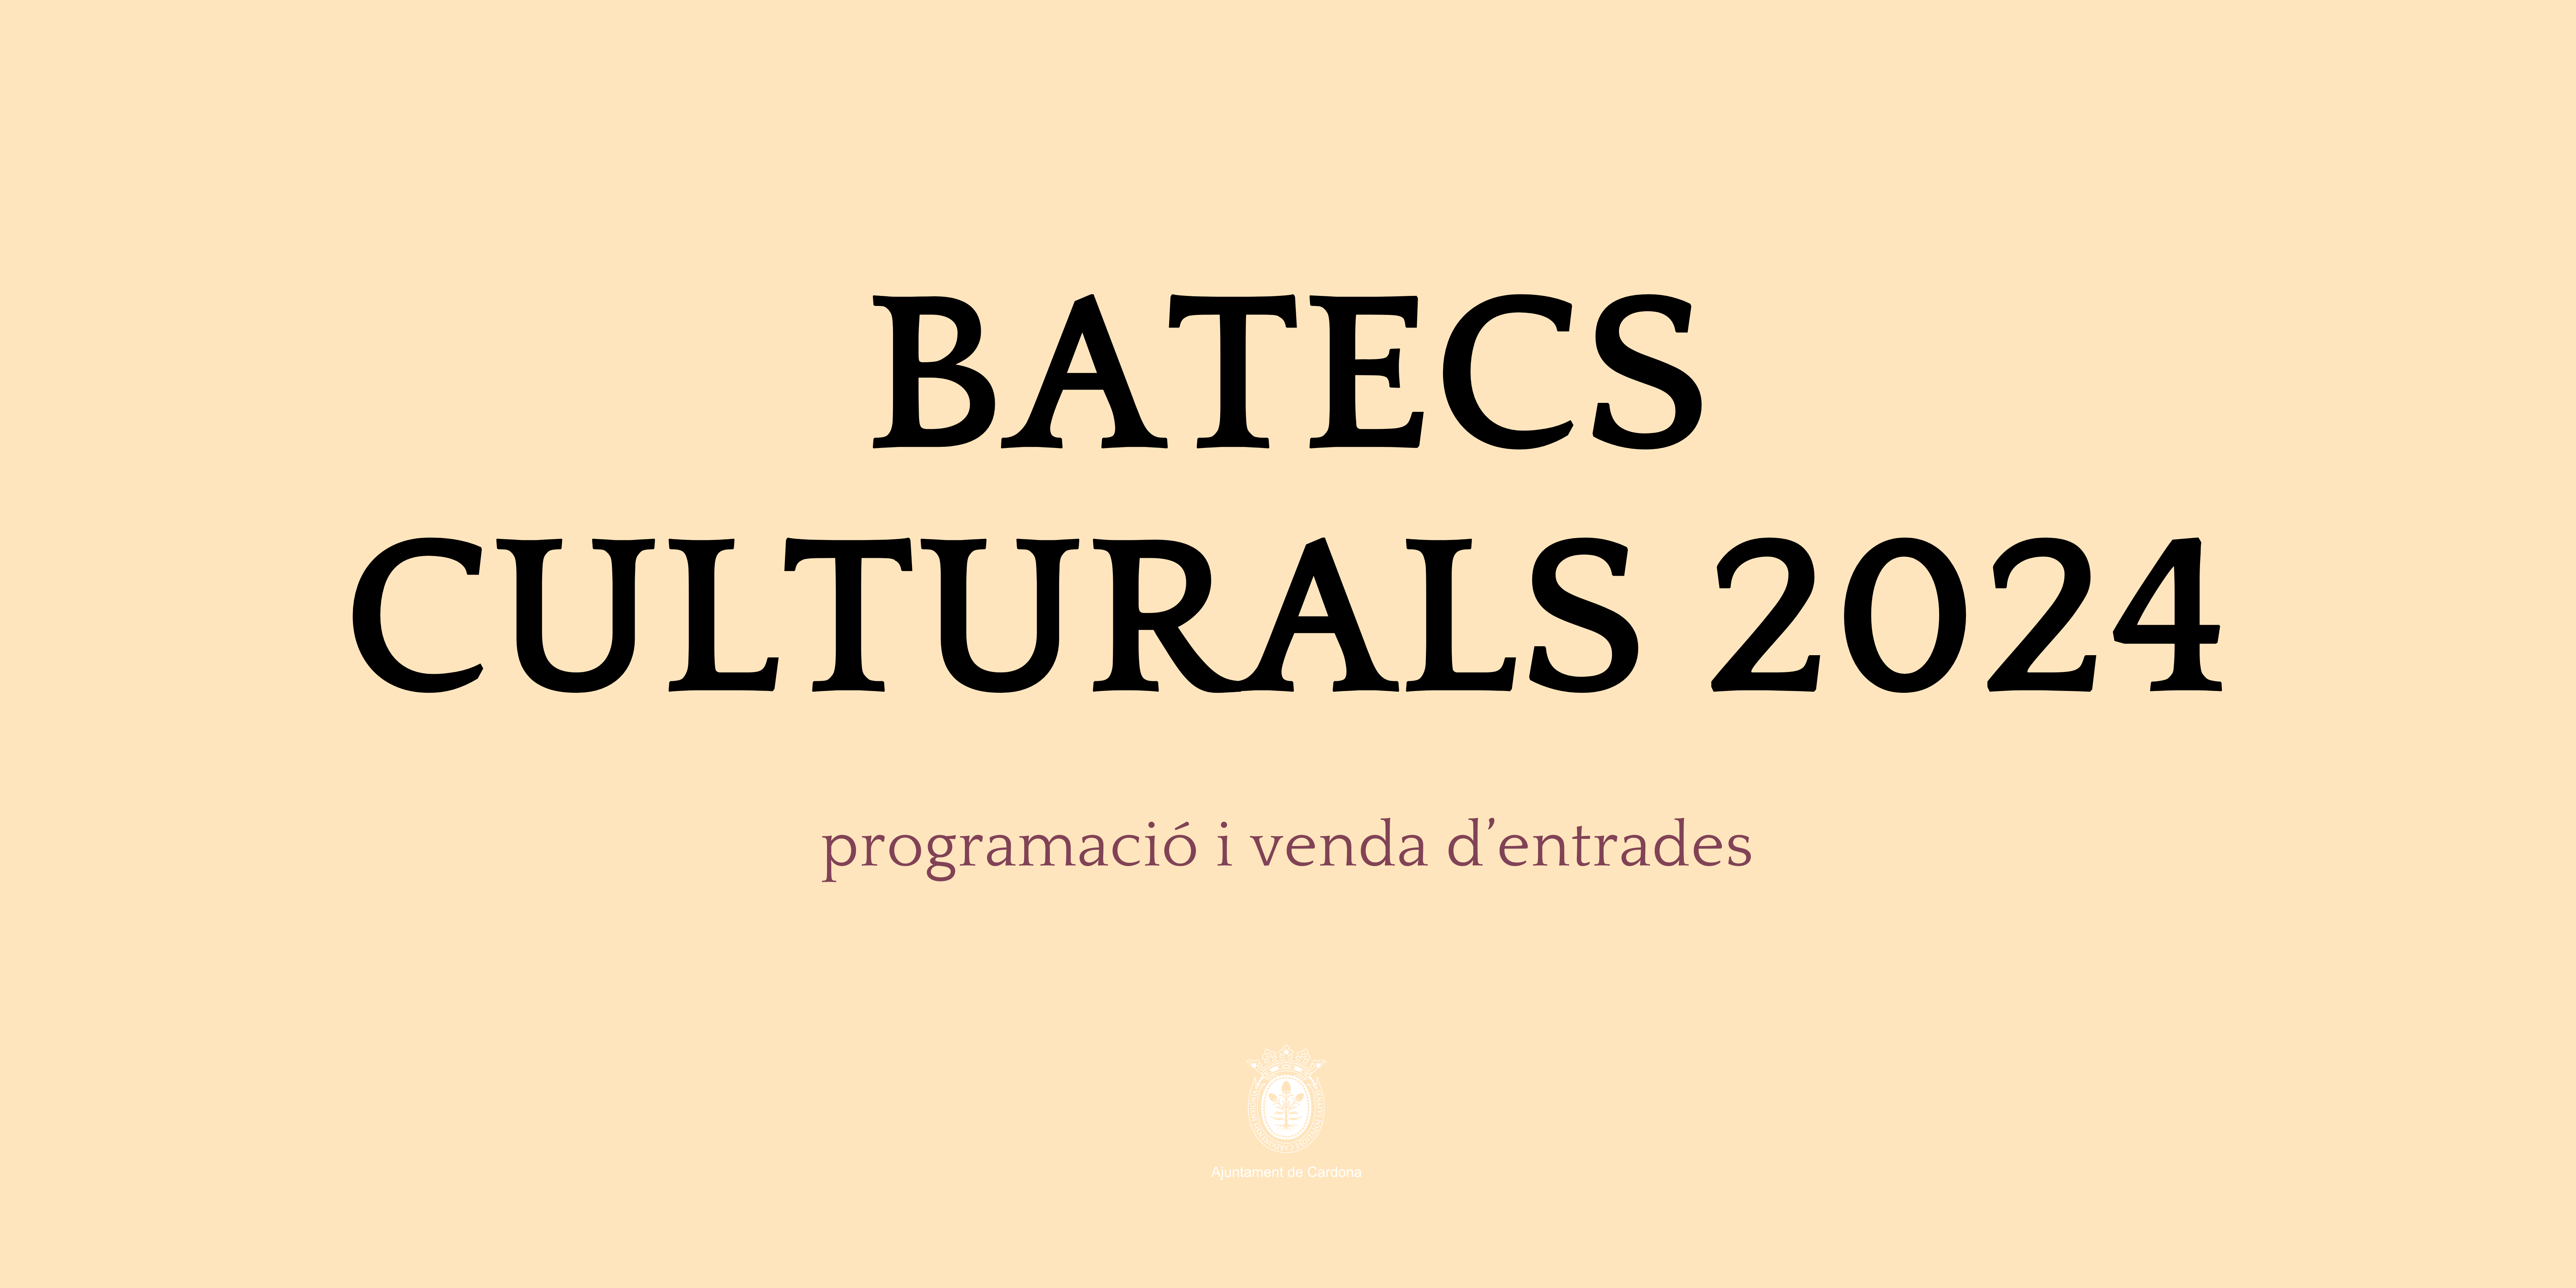 Batecs Culturals 2024